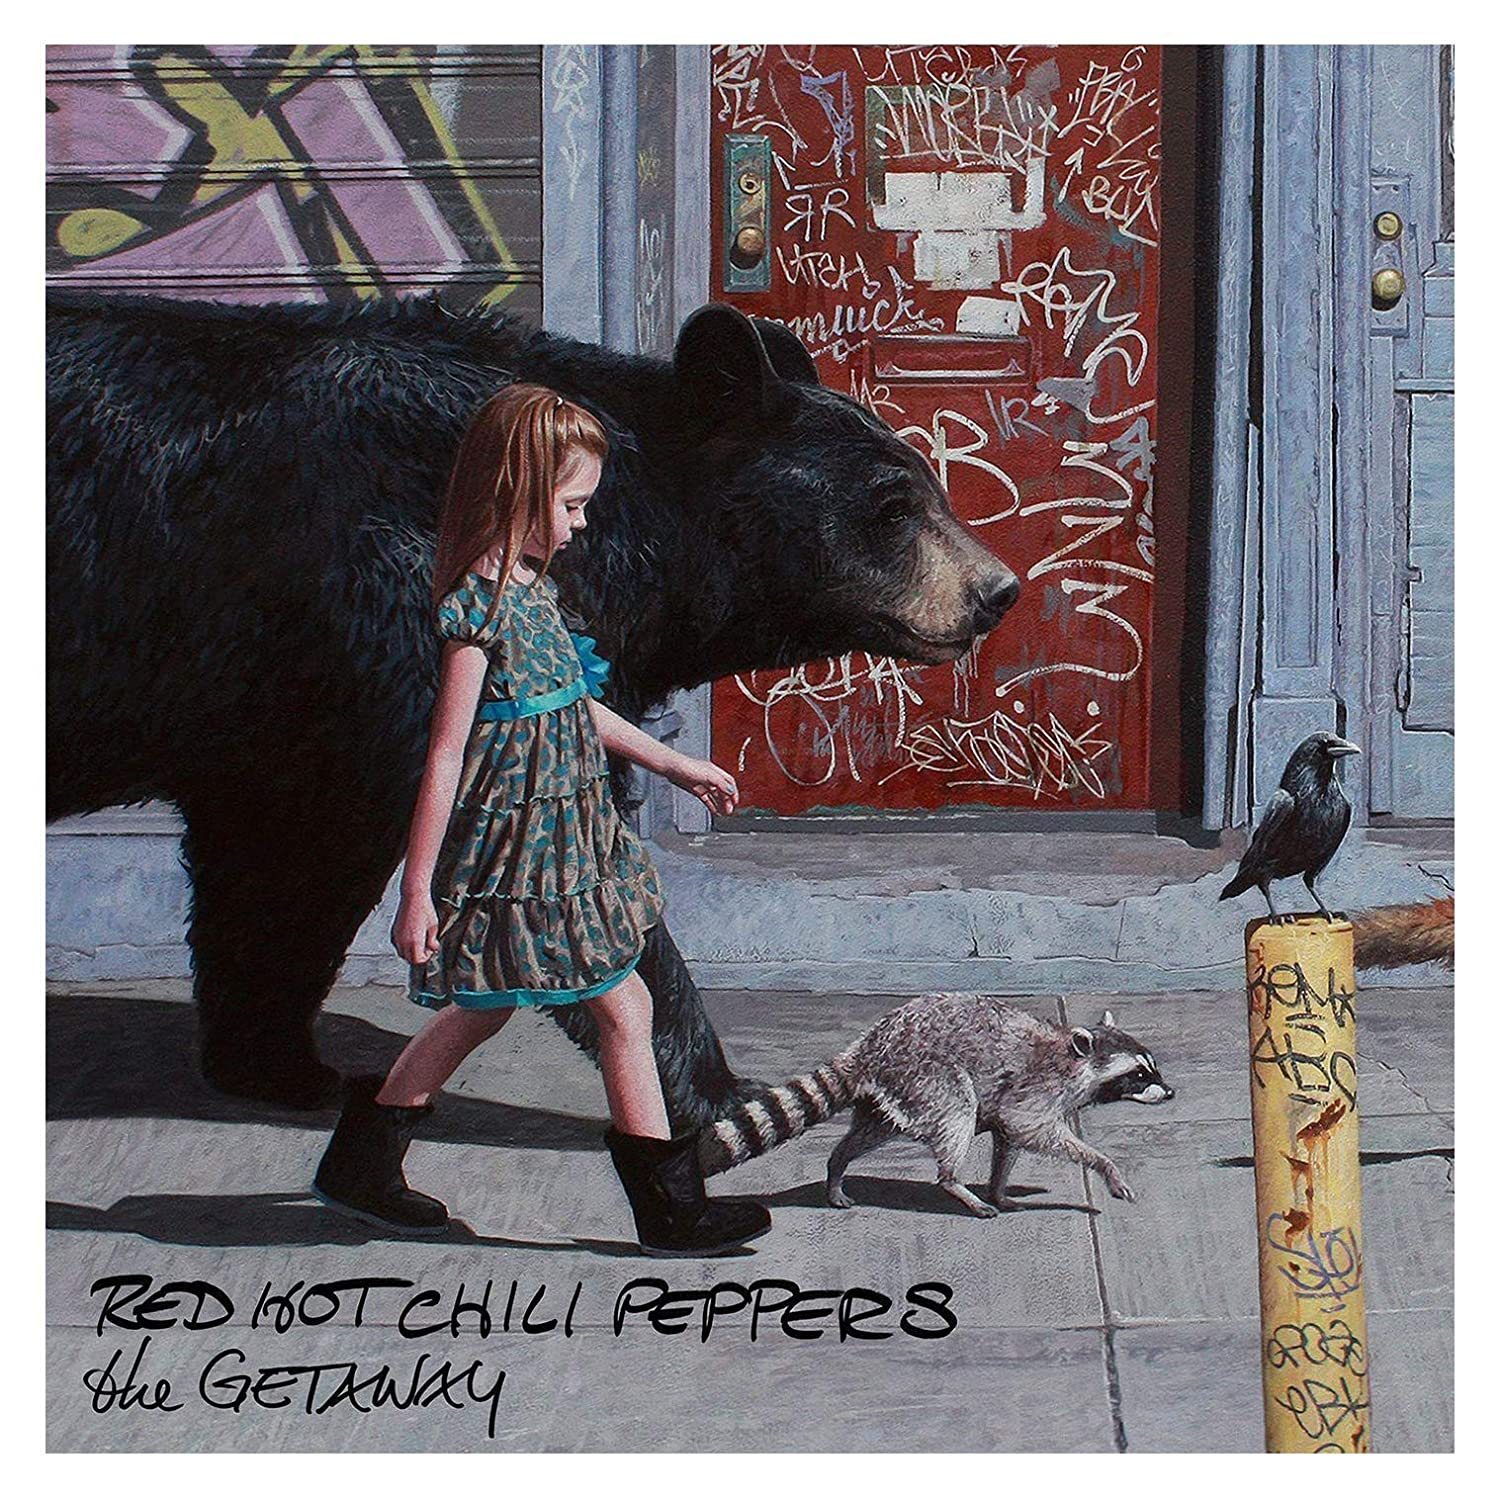 Red hot peppers dark necessities. The Getaway альбом Red hot Chili Peppers. Red hot Chili Peppers the Getaway 2016. RHCP обложки альбомов. RHCP the Getaway альбом.